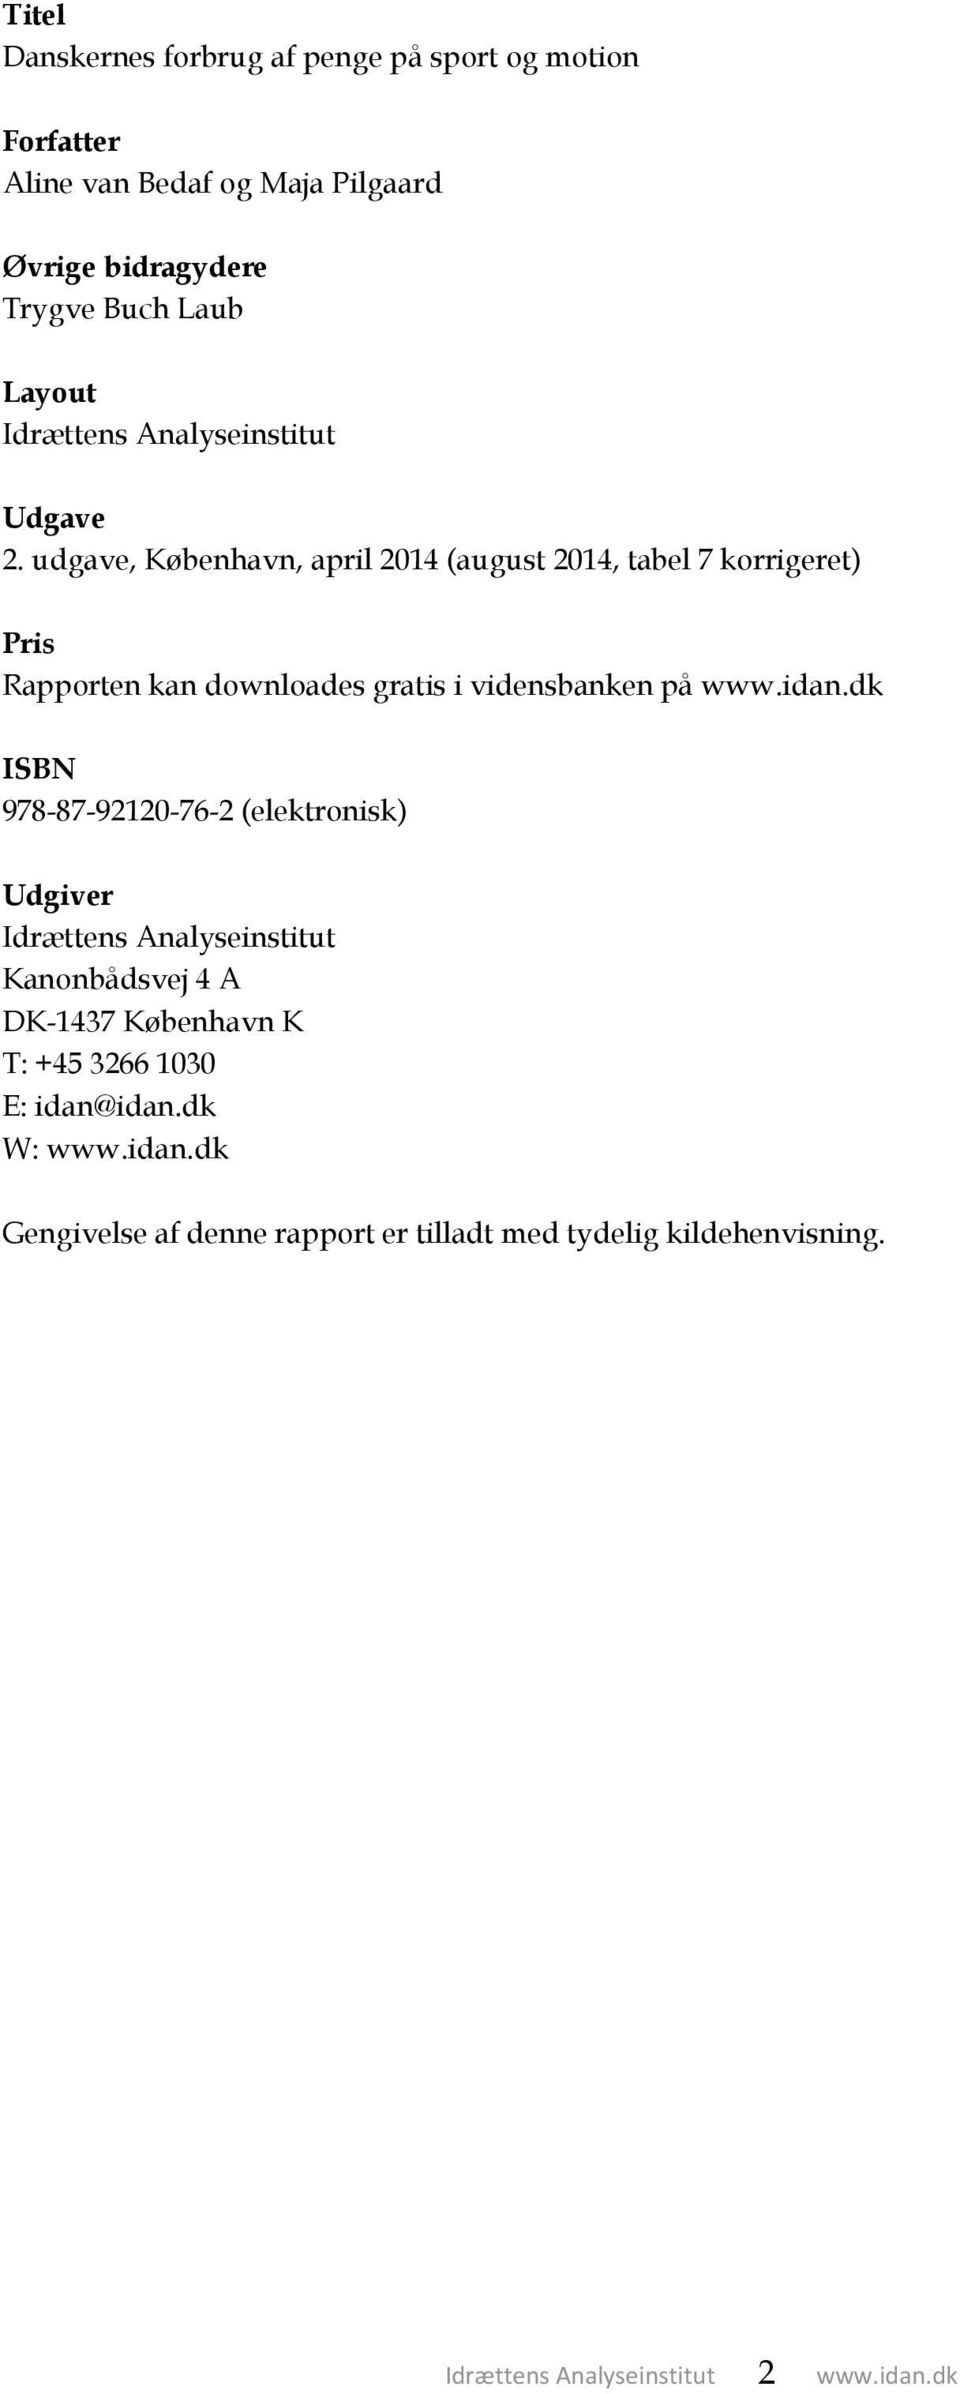 udgave, København, april 2014 (august 2014, tabel 7 korrigeret) Pris Rapporten kan downloades gratis i vidensbanken på www.idan.